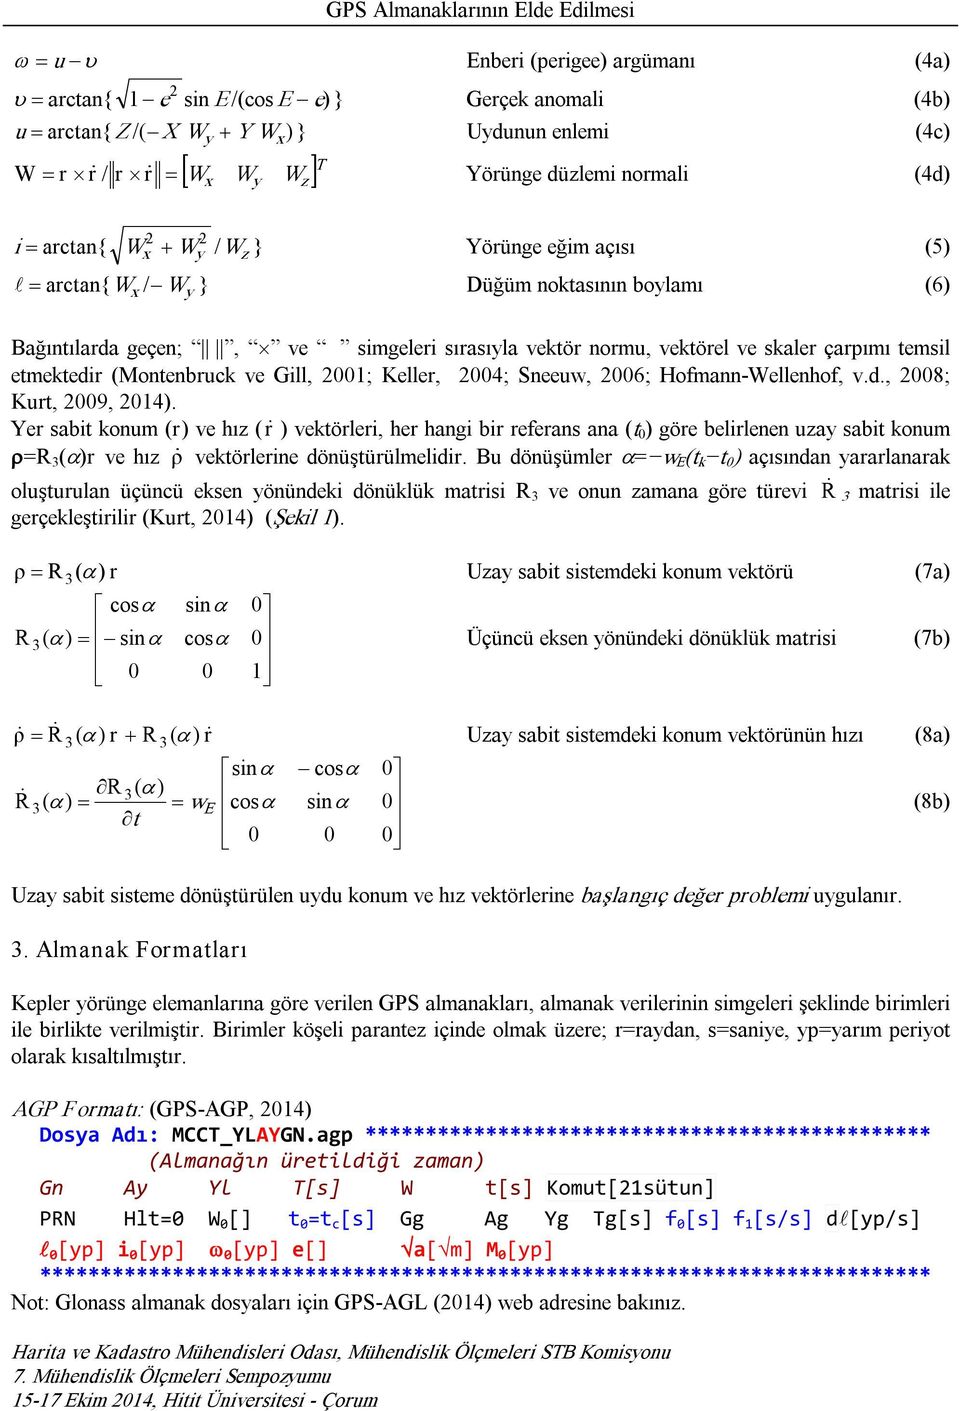 etmetedir (Montenbruc ve Gill, 001; Keller, 004; Sneeuw, 006; Hofmann Wellenhof, v.d., 008; Kurt, 009, 014).